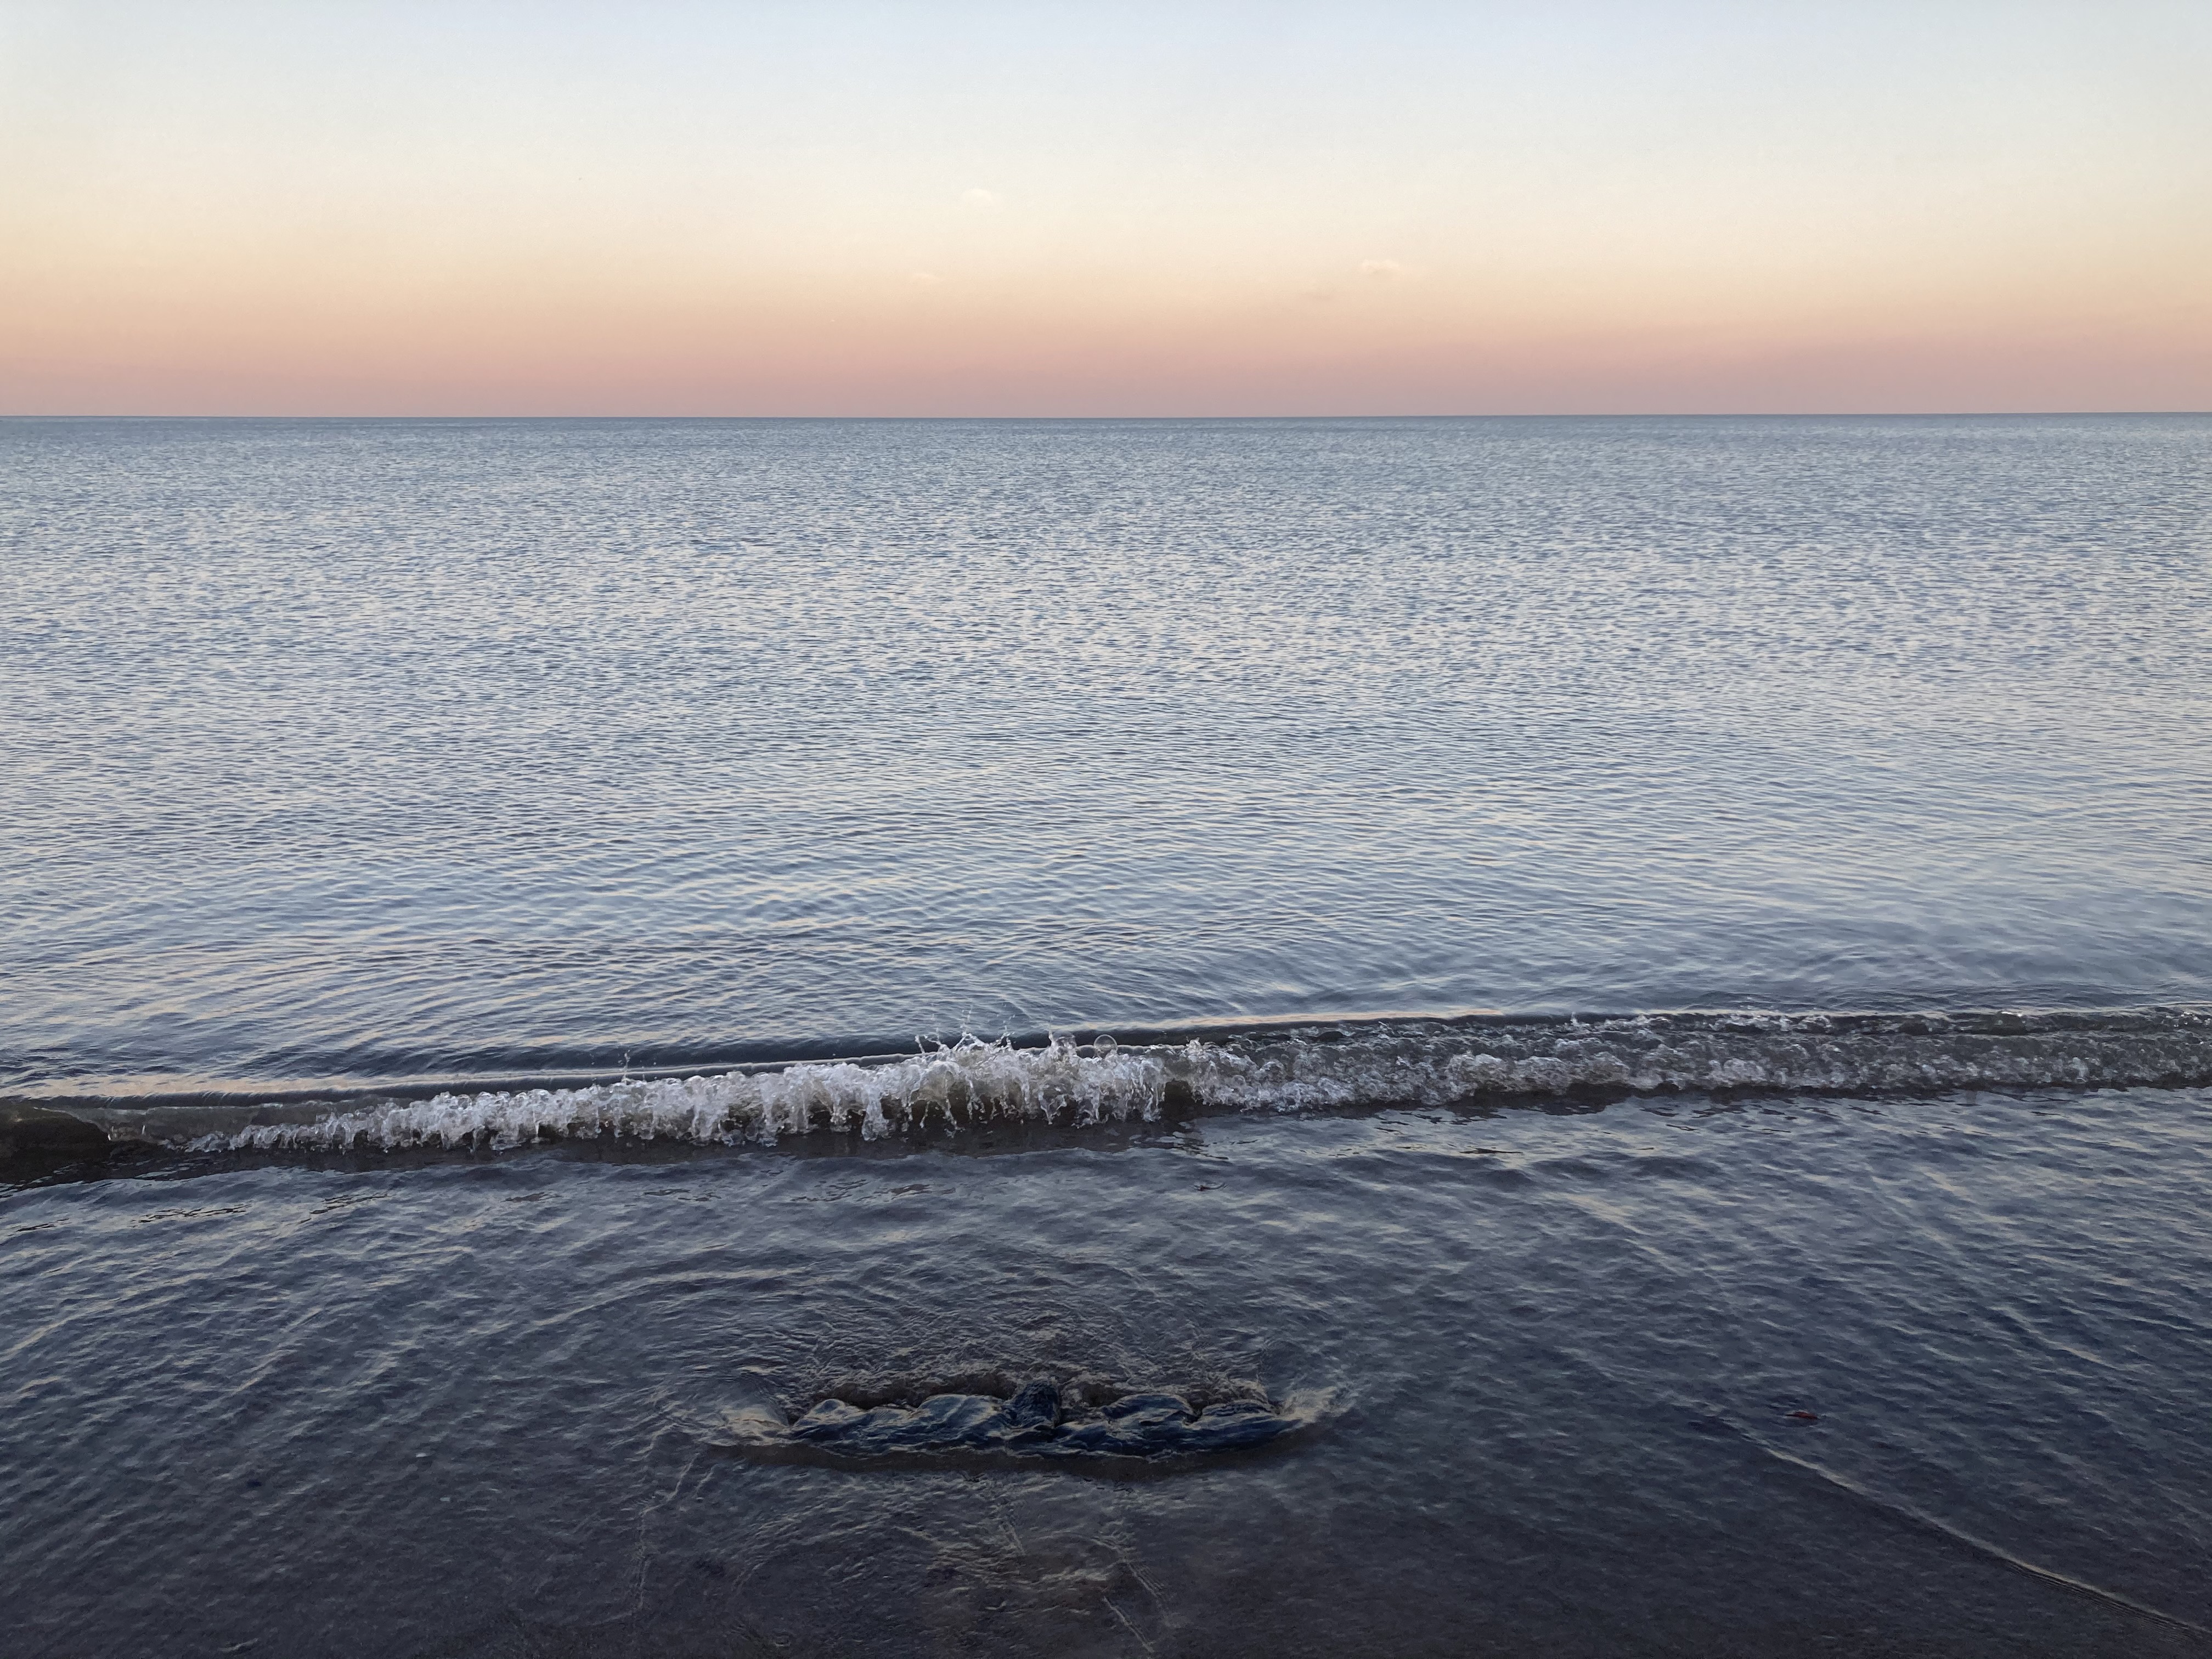 Four images of tides washing over a line of asphalt rocks.